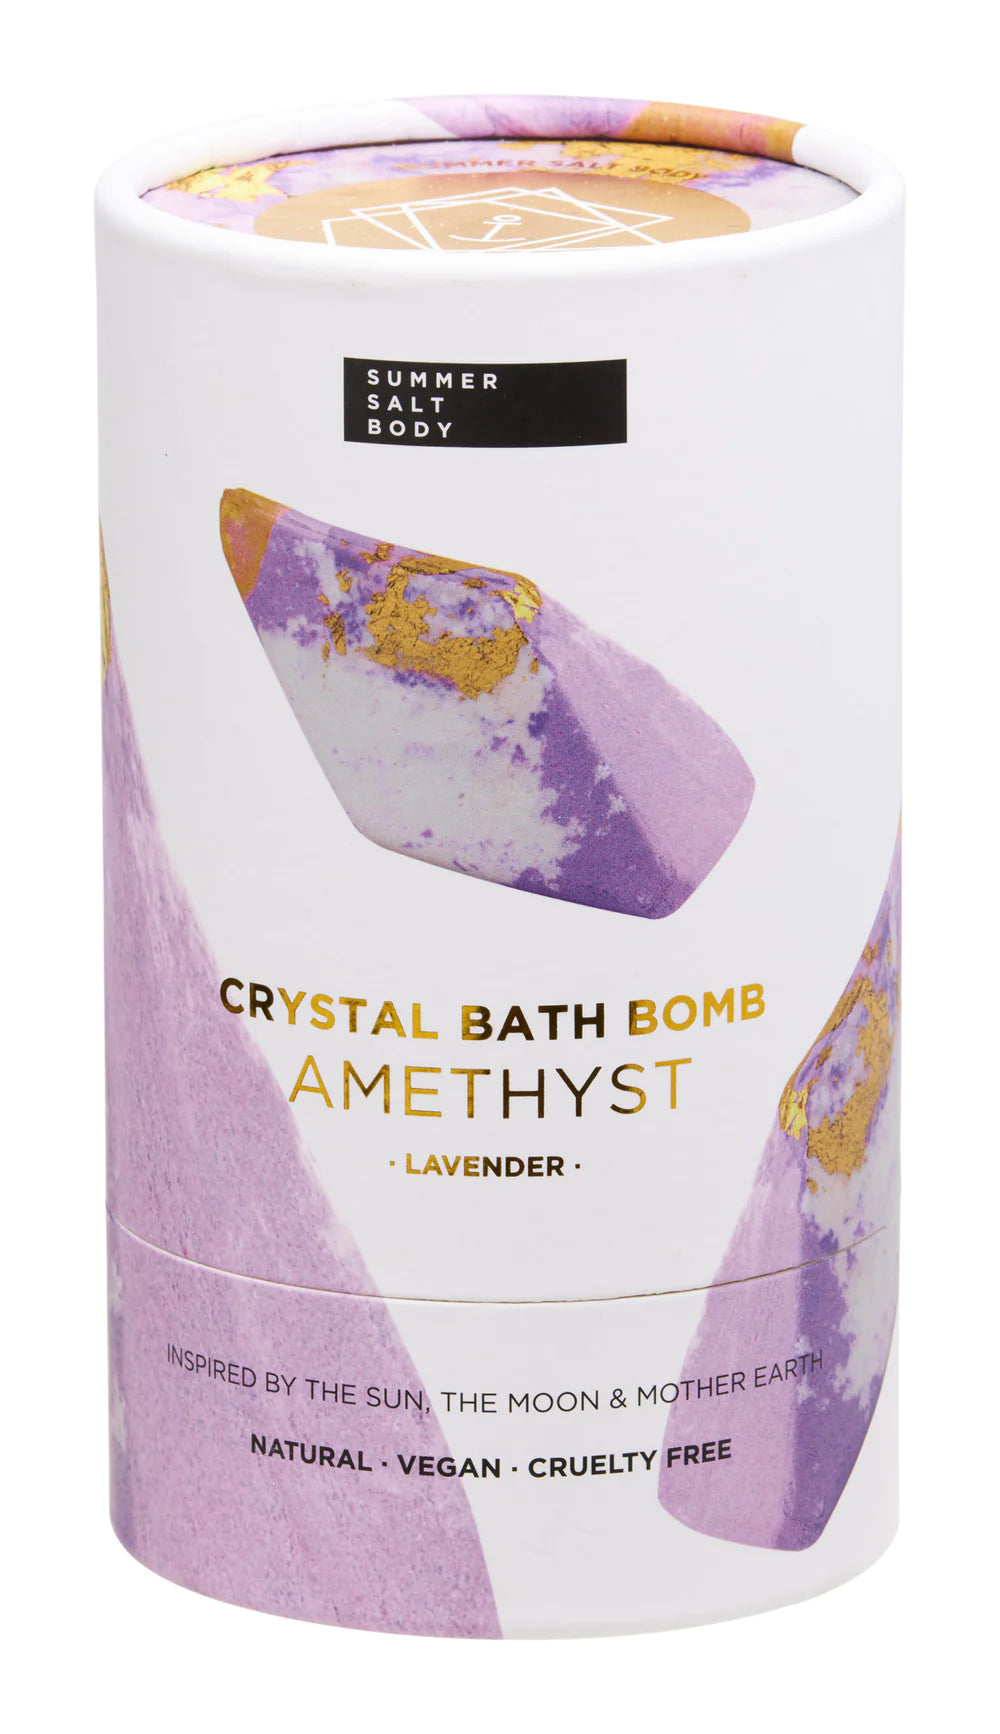 Summer Salt Body - Crystal Bath Bomb (Amethyst Lavender)